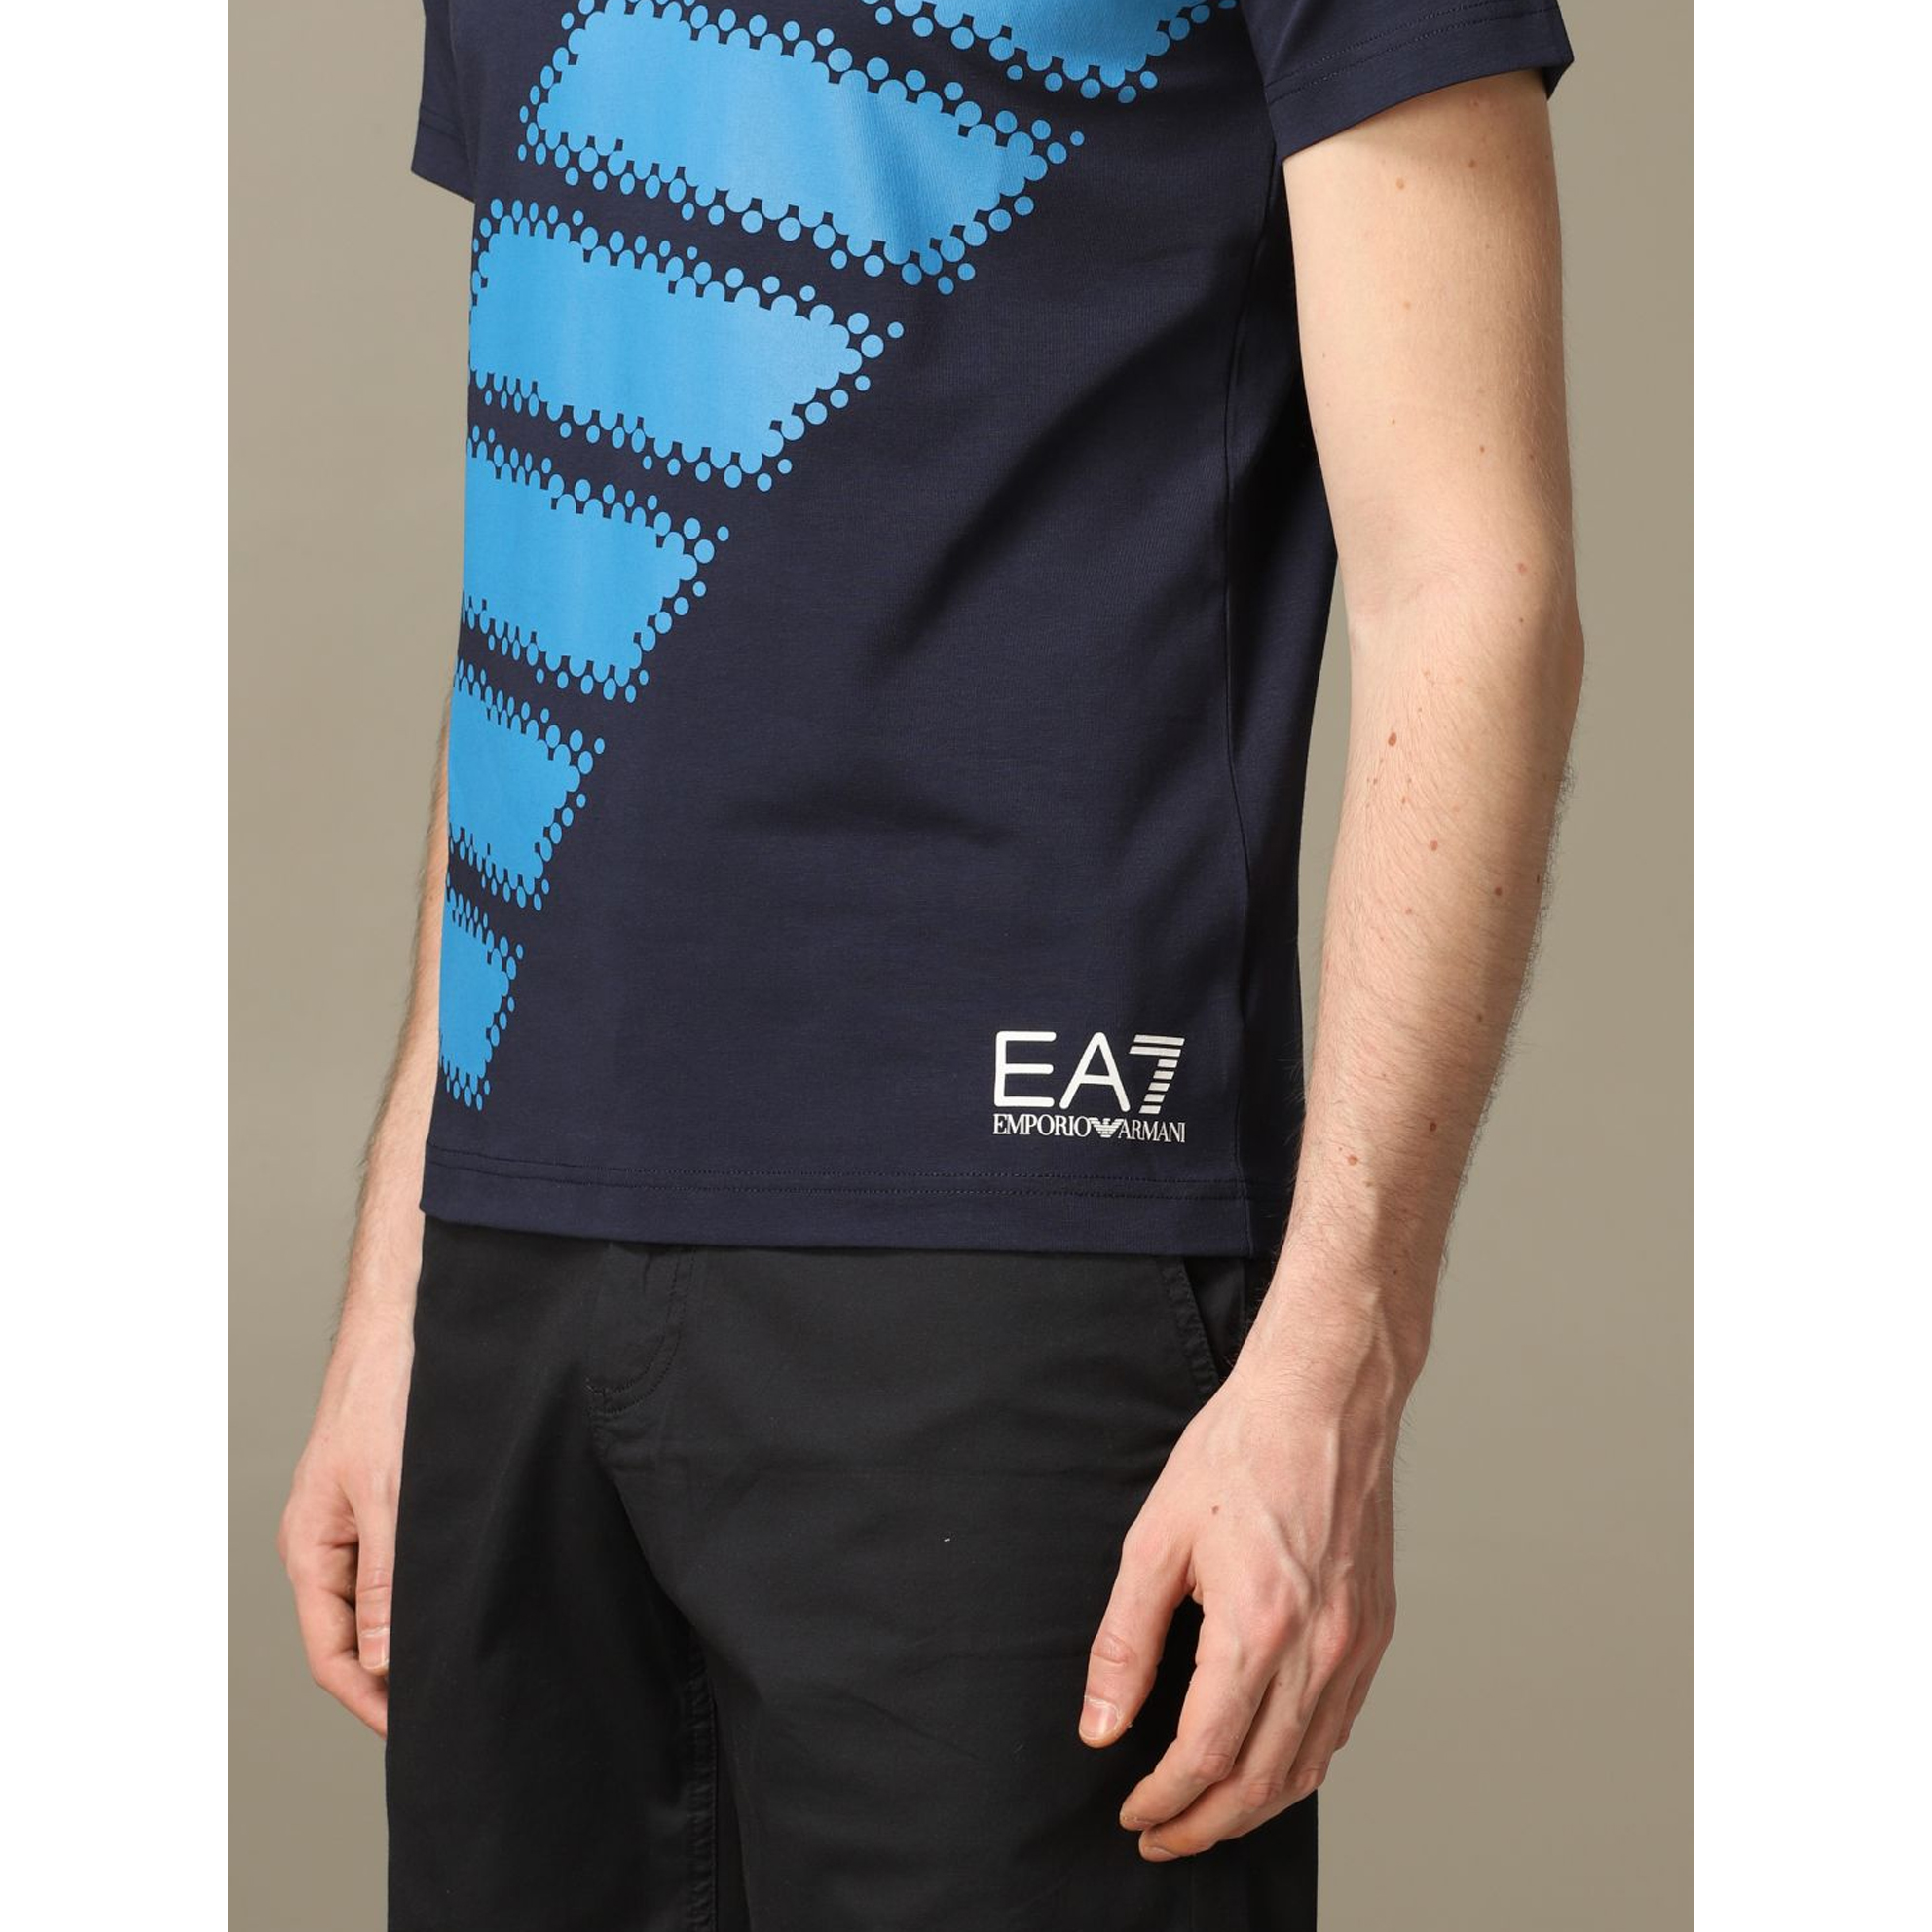 Image 2 of EA7 エンポリオアルマーニメンズ EA7 BIG バブル7 半袖Tシャツ ブラック 3HPT54 PJP6Z 1554